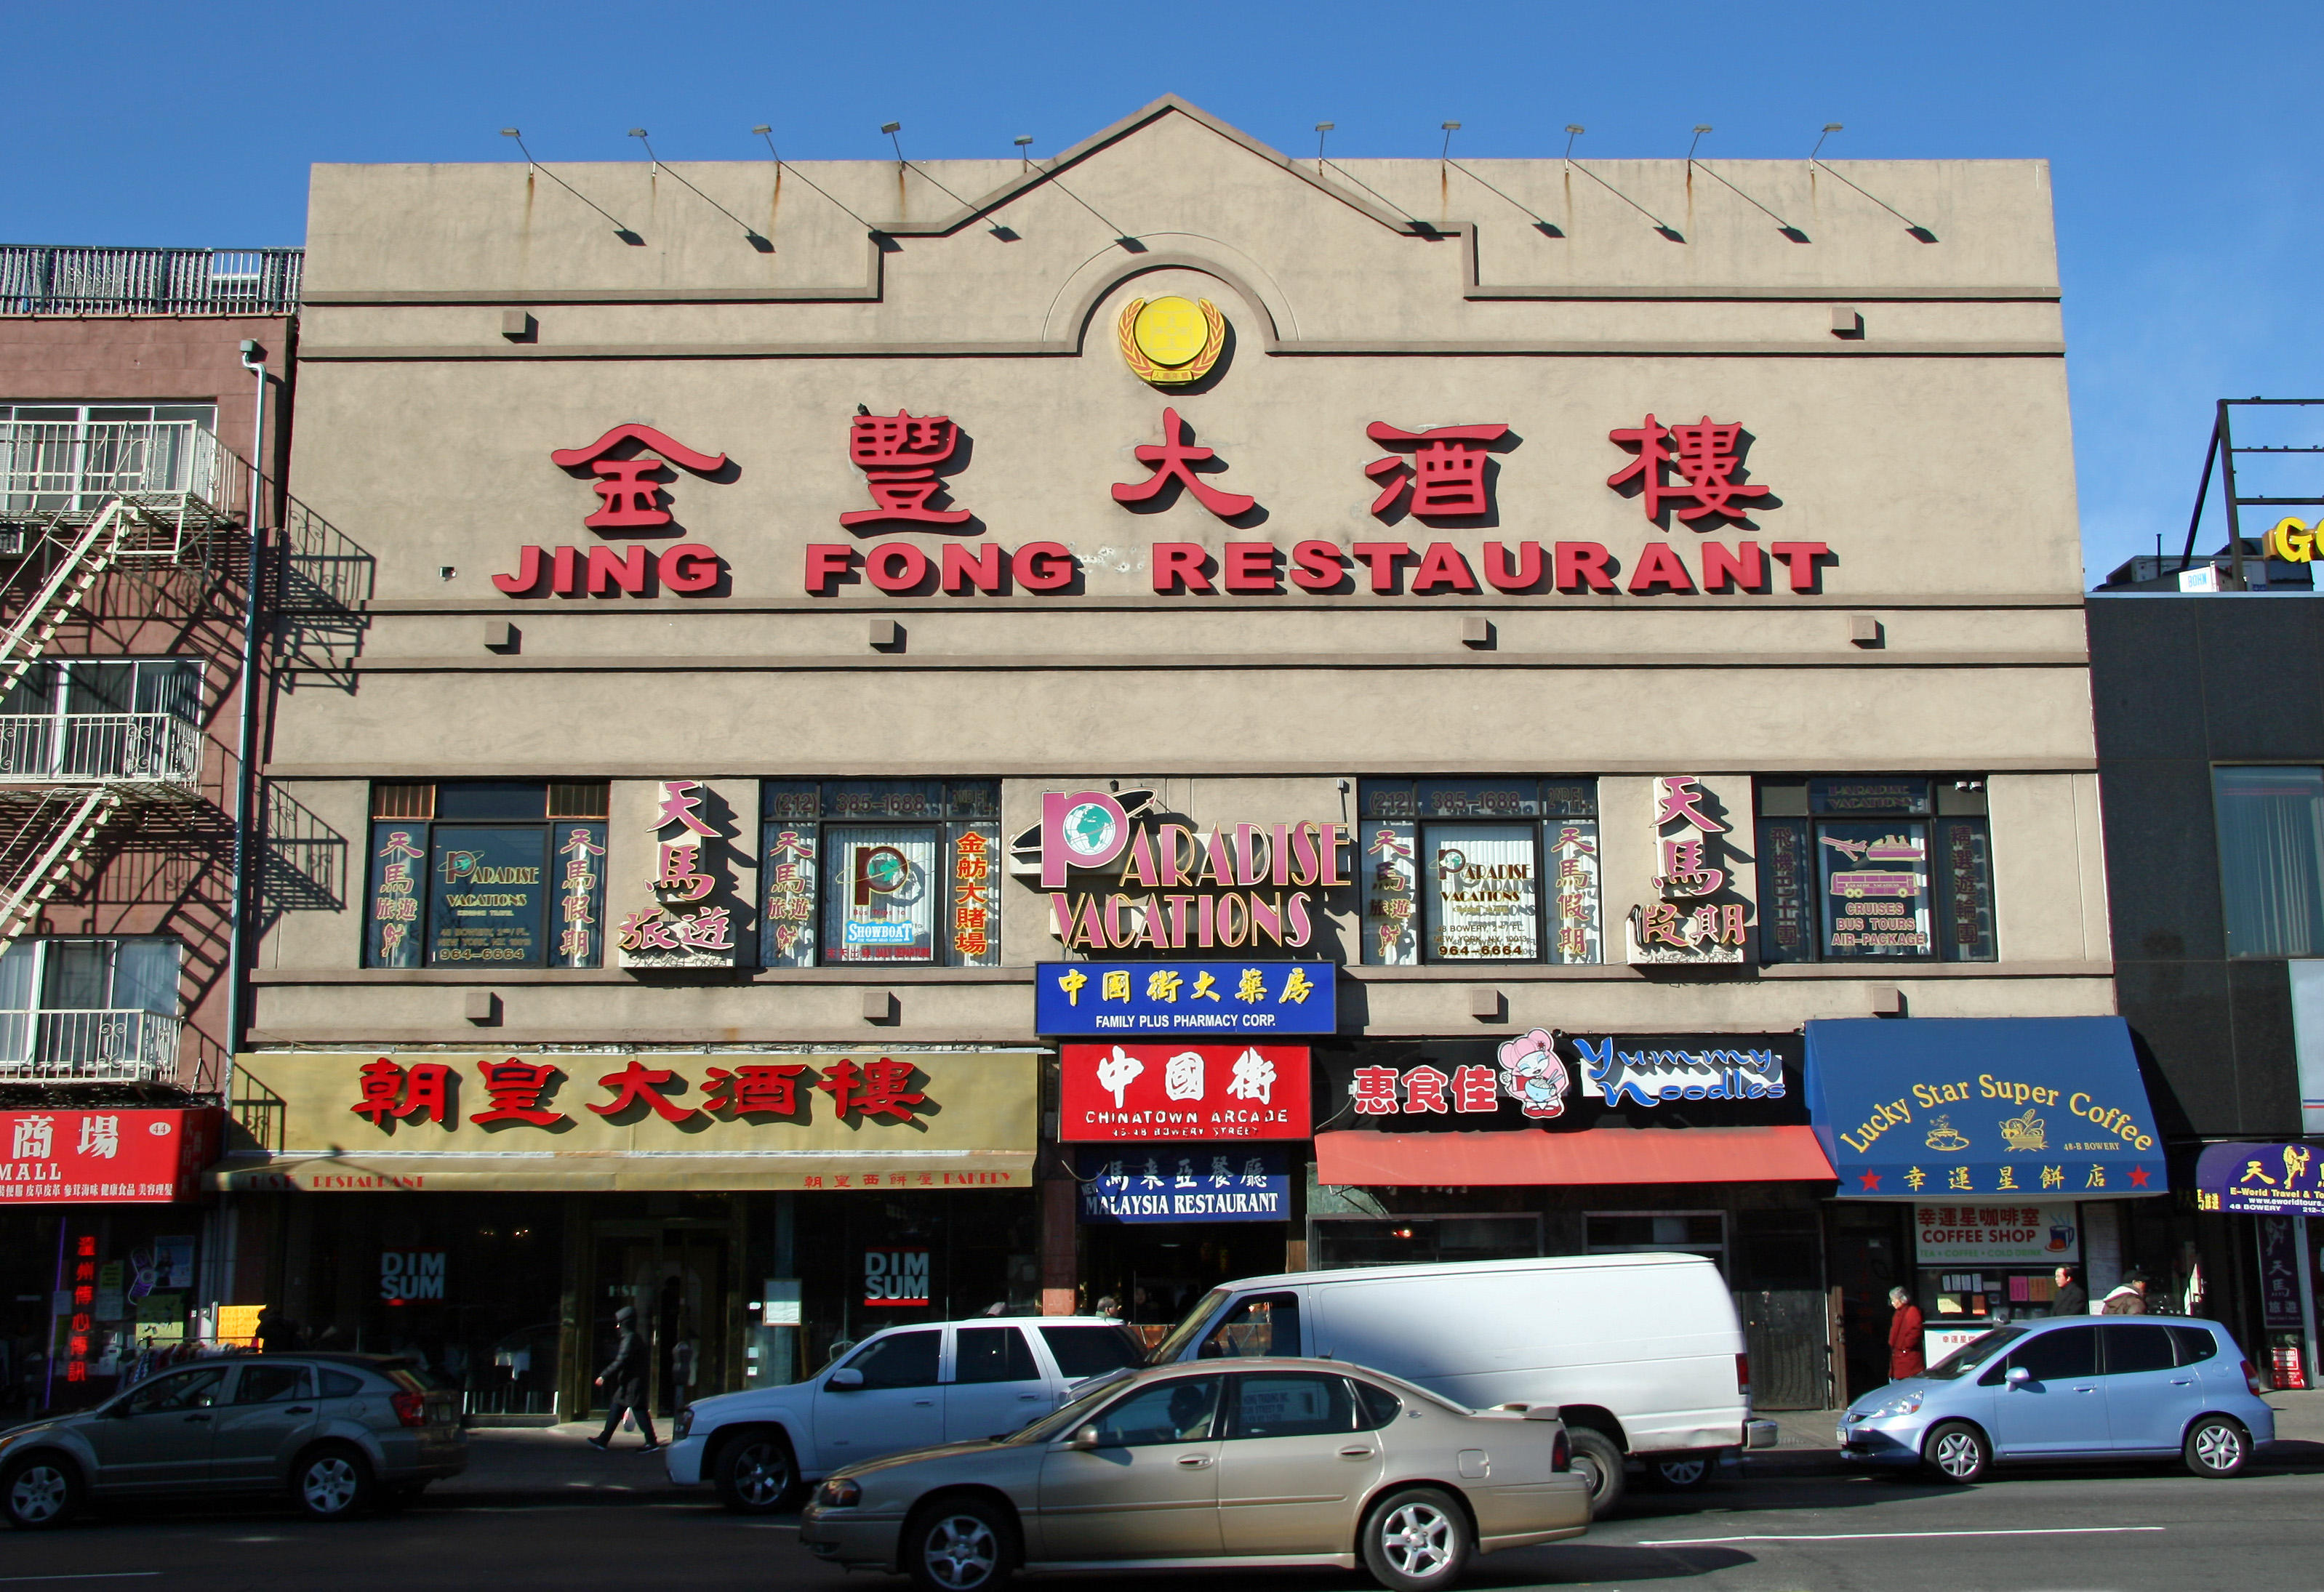 Jing Fong Restaurant near Canal Street